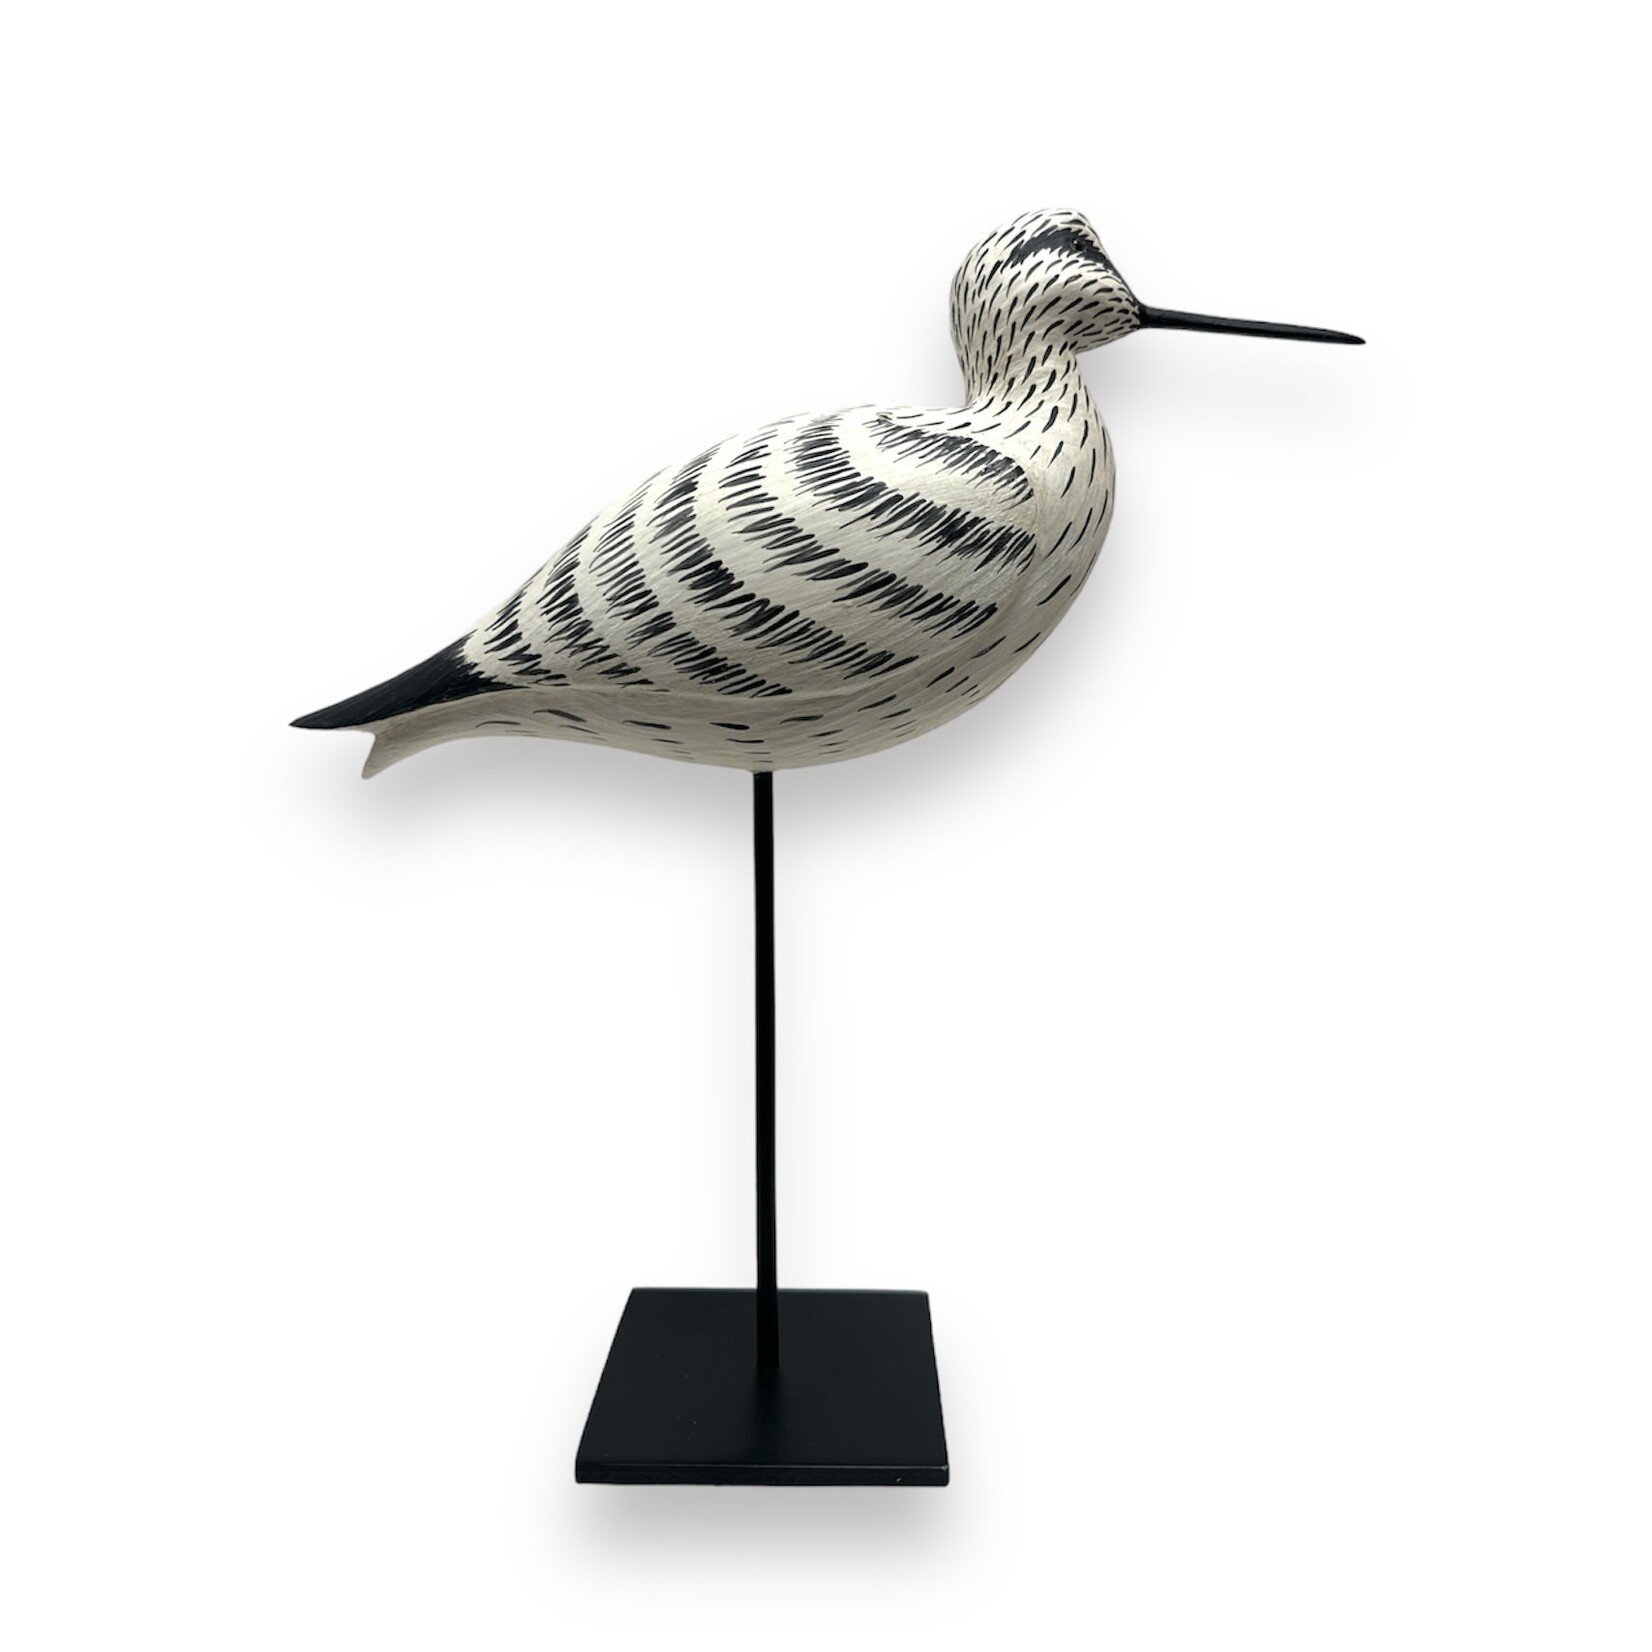 Willet Shorebird on Metal Display